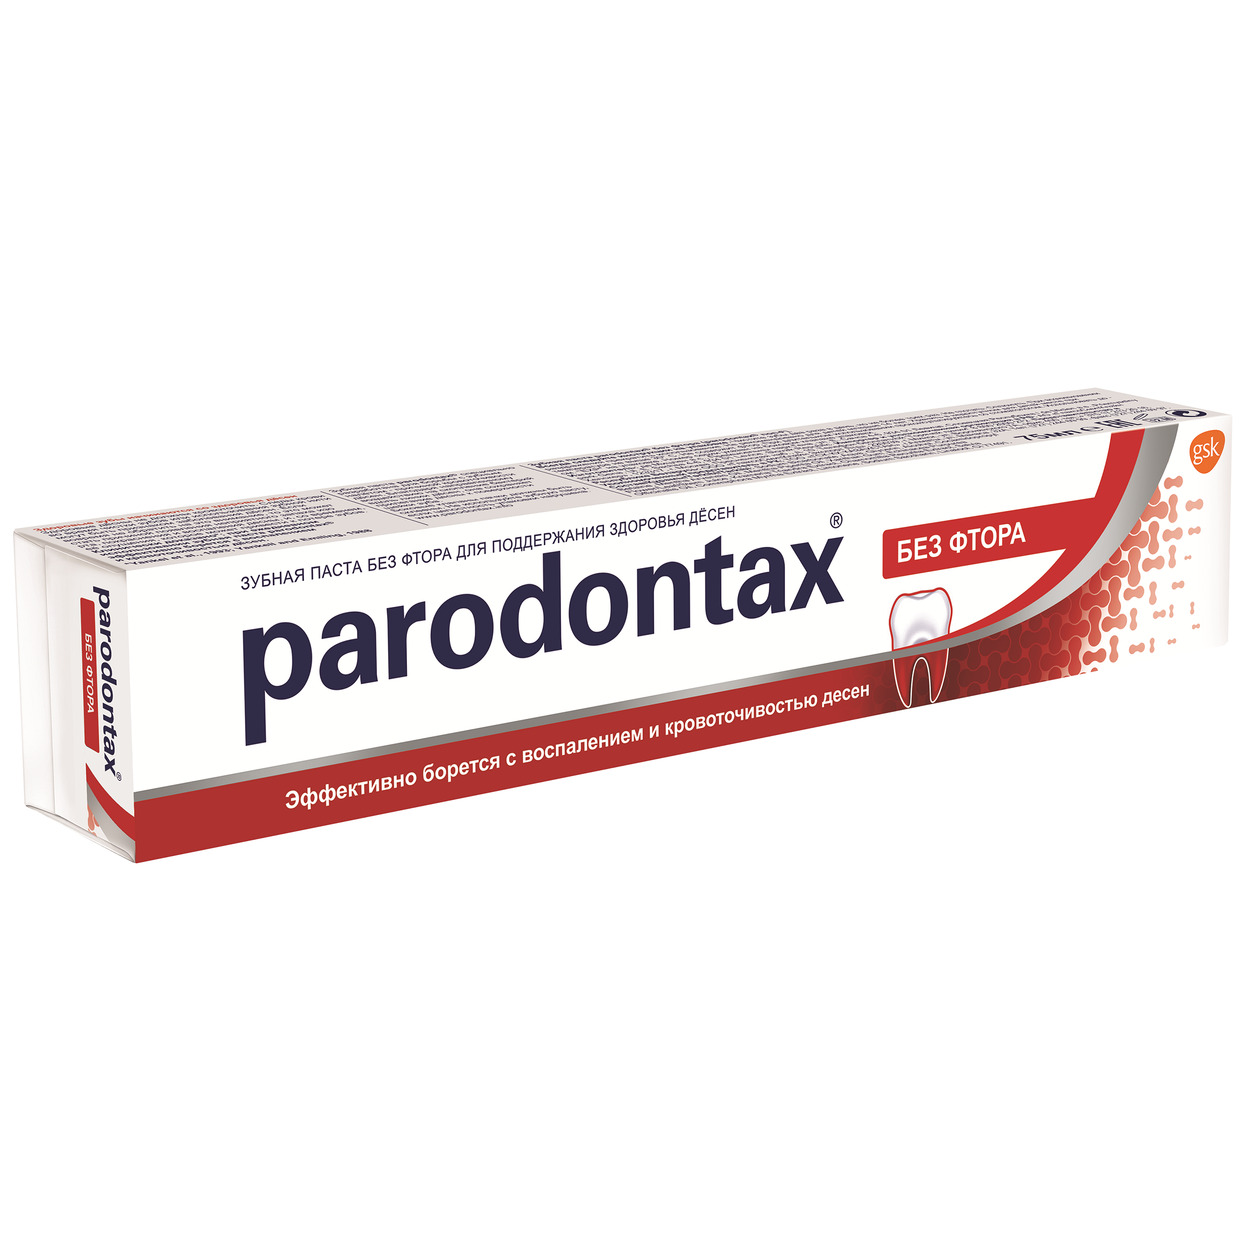 Зубная паста Parodontax без фтора 75мл по акции в Пятерочке